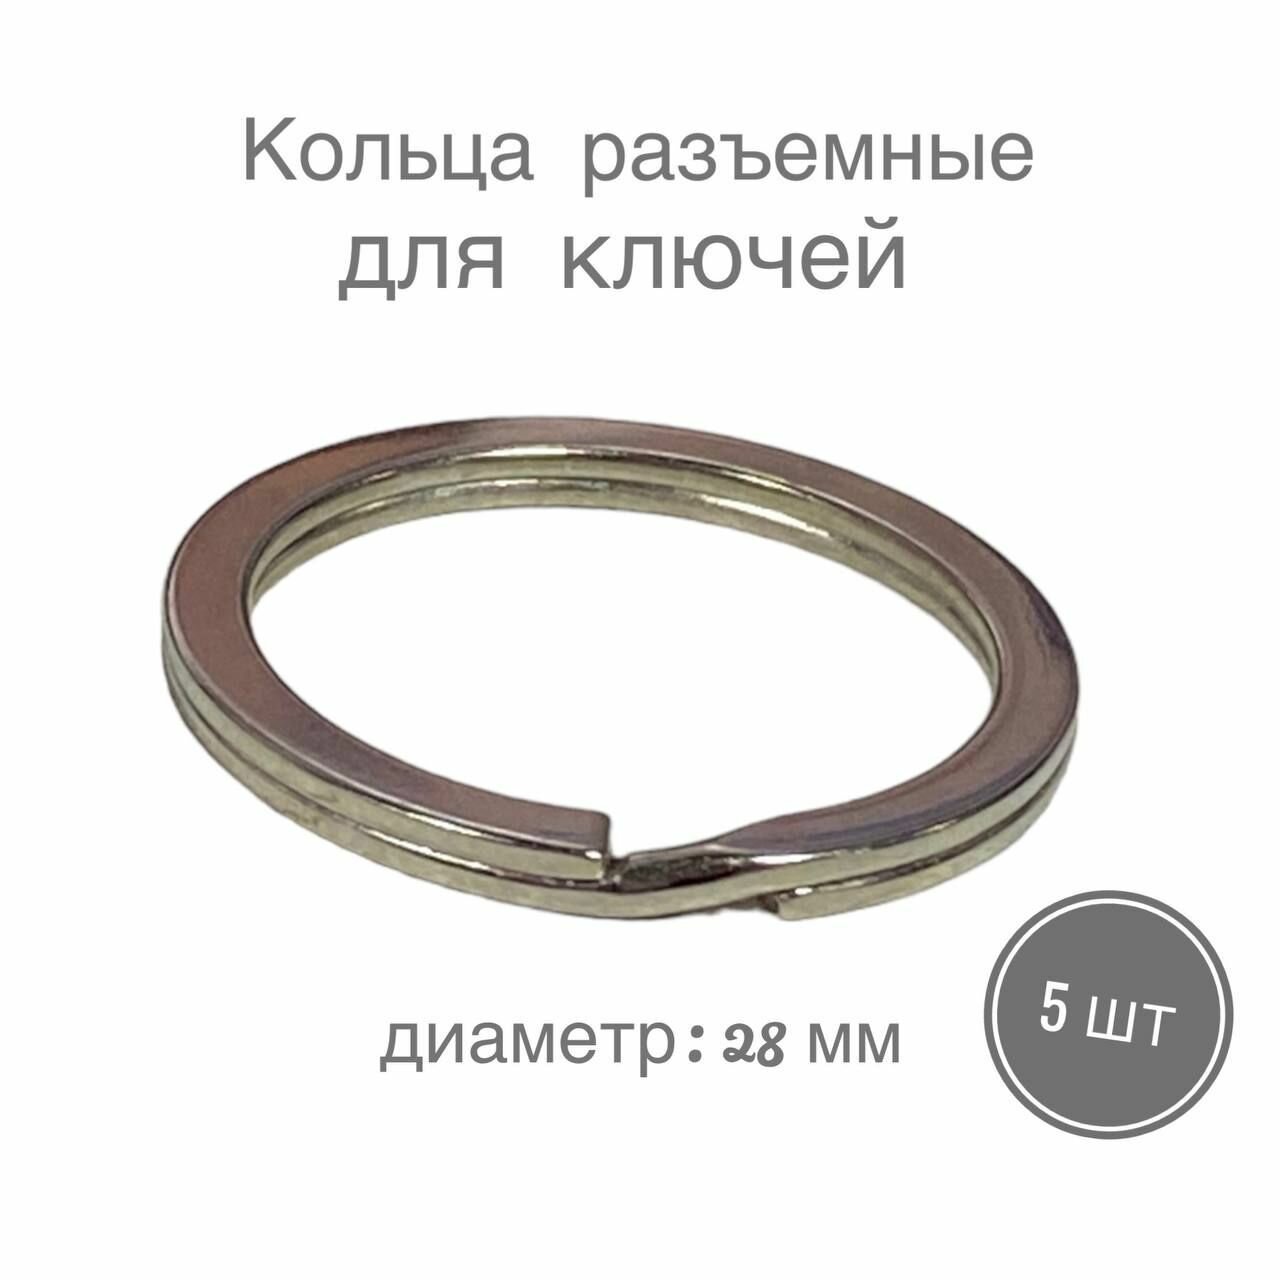 Кольца разъемные кольца для ключей сумок одежды рукоделия диаметр 28 мм 10 шт цвет серебряный